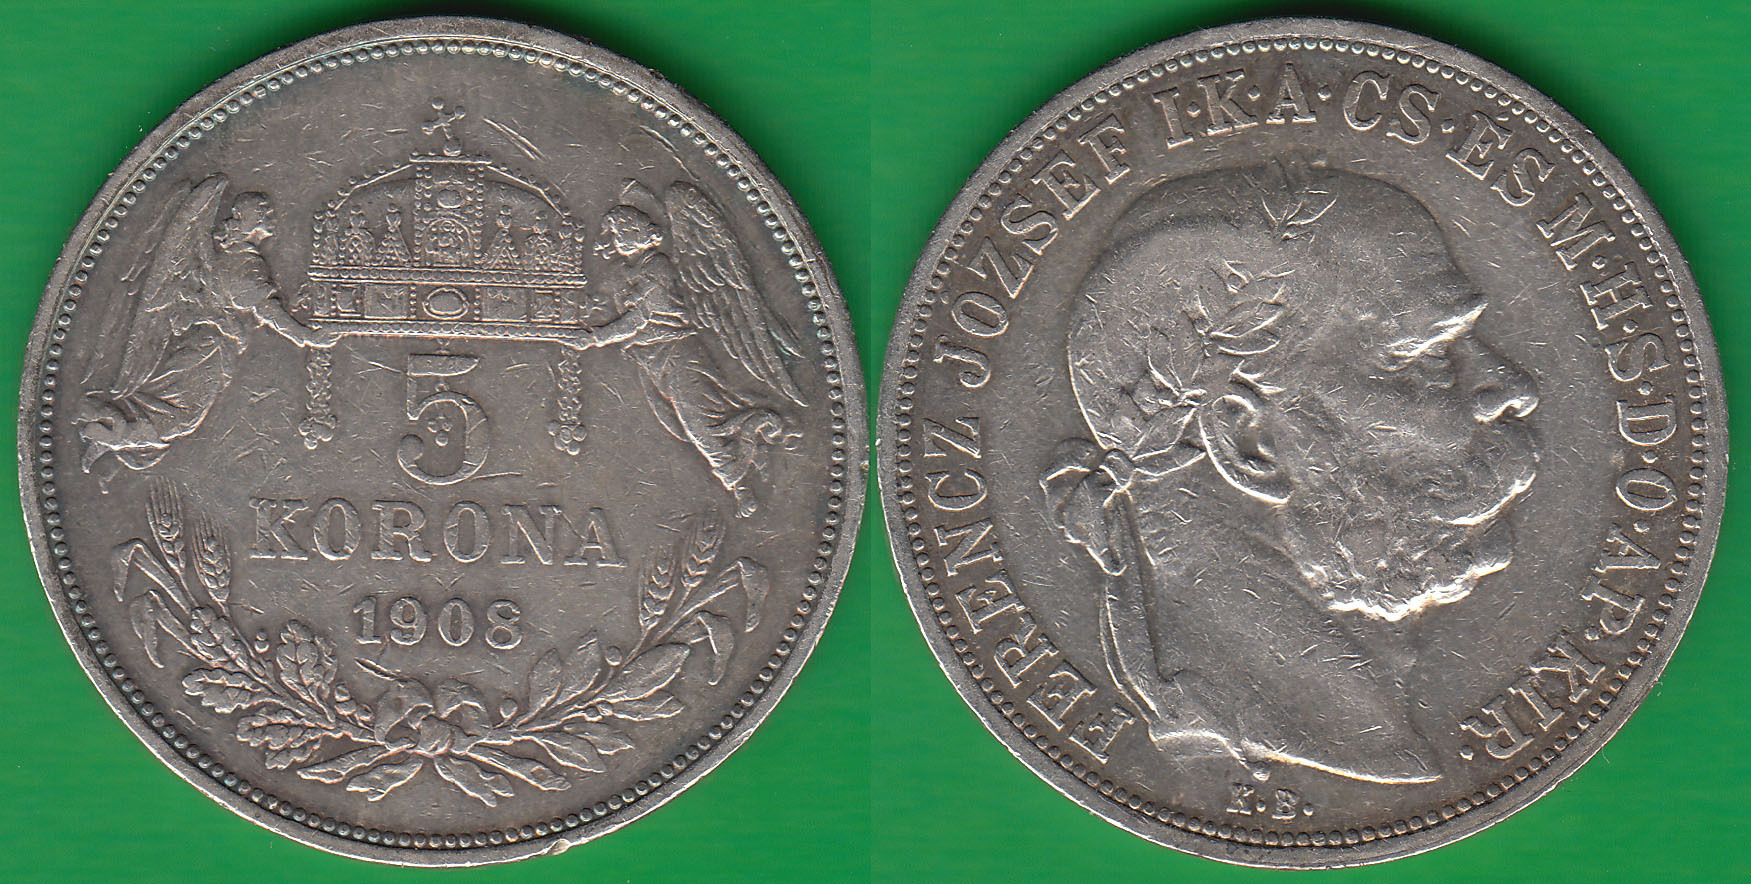 HUNGRIA - HUNGARY. 5 KORONAS DE 1908 KB. PLATA 0.900.